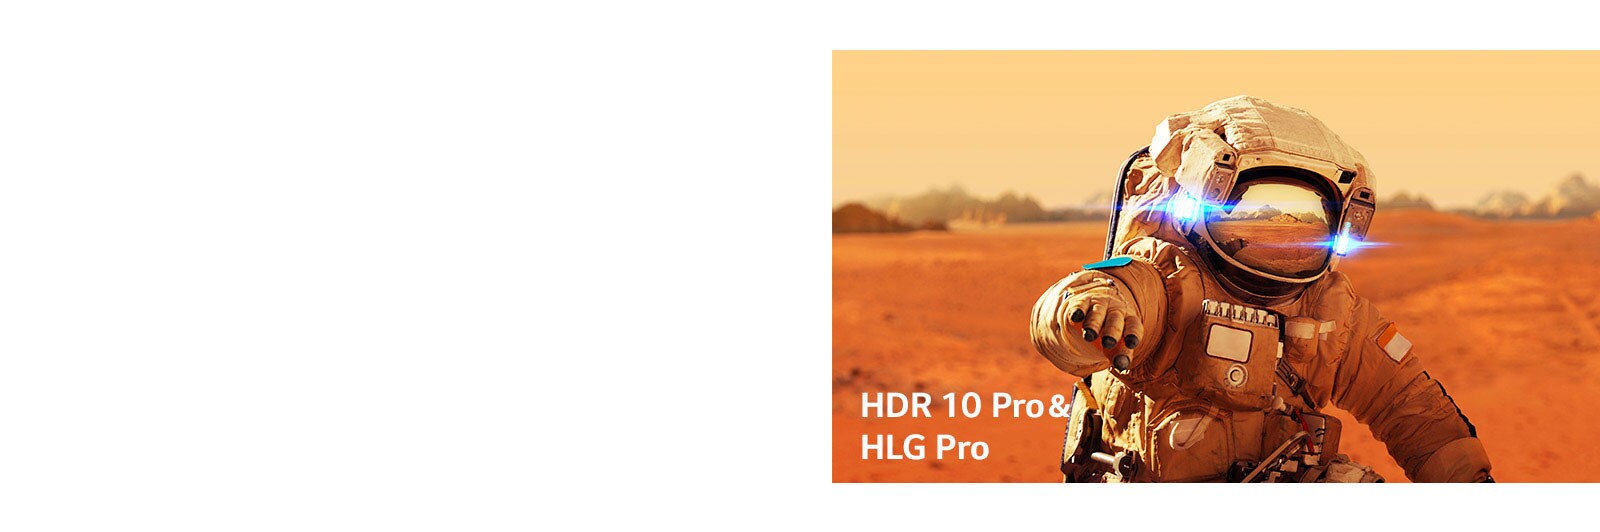 Marvel Iron Man, poster del film con loghi HLG pro e HDR 10 Pro